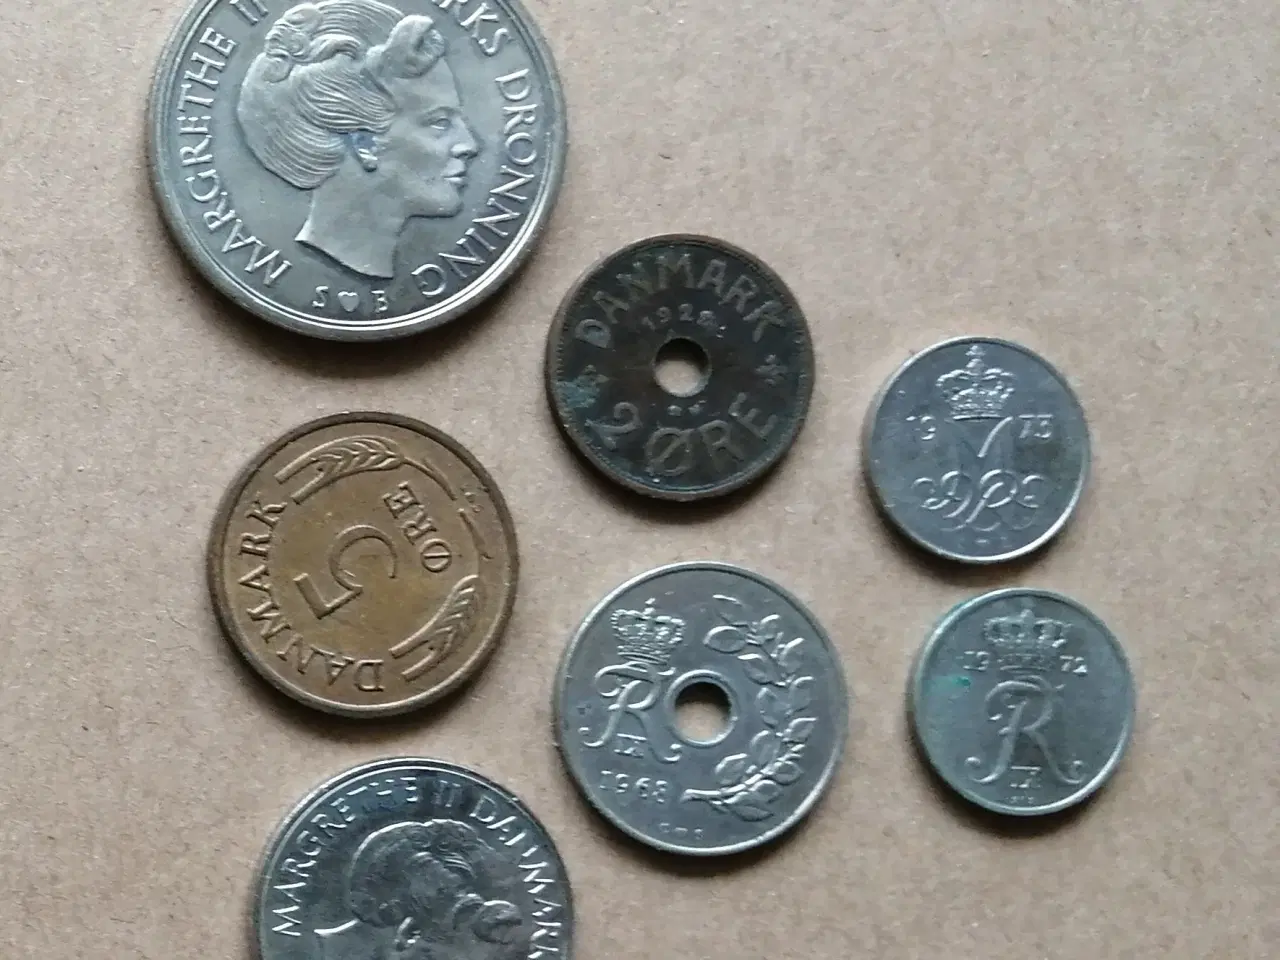 Billede 2 - Danske mønter og 10 kr. seddel